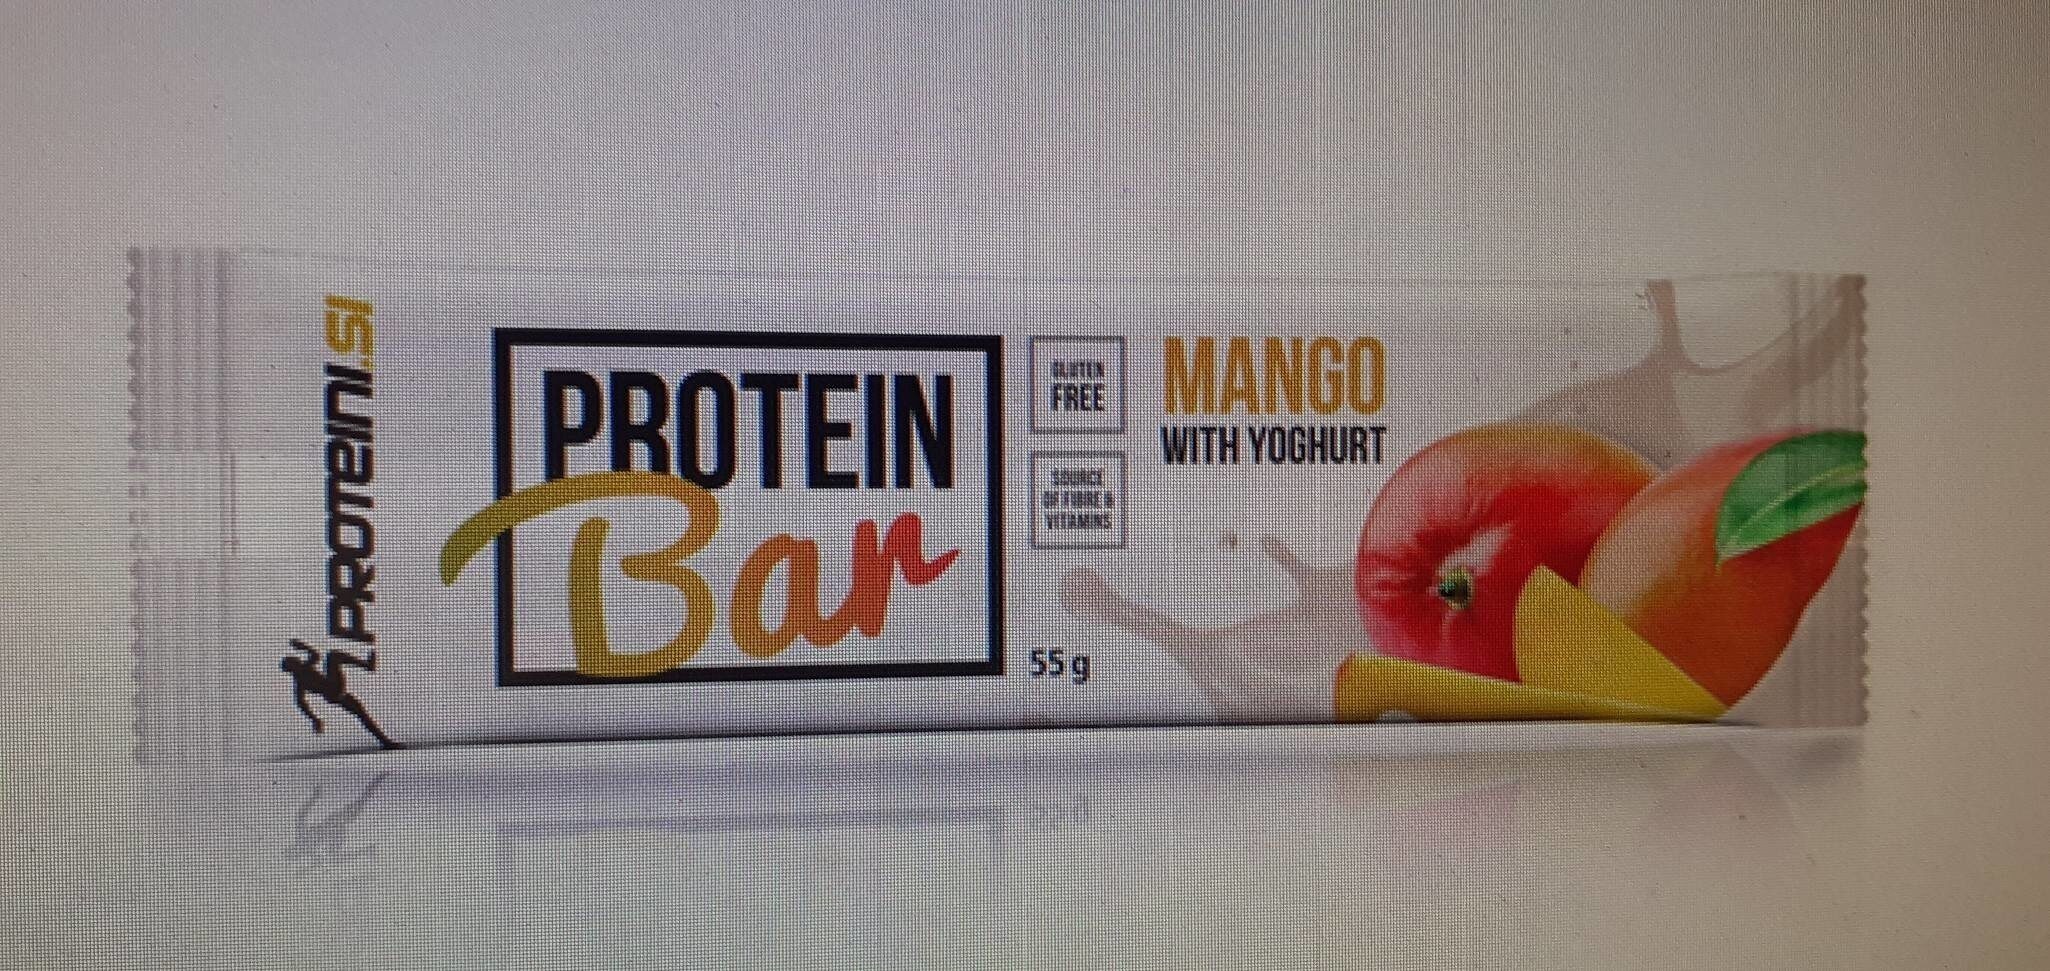 Protein bar - Produkt - it